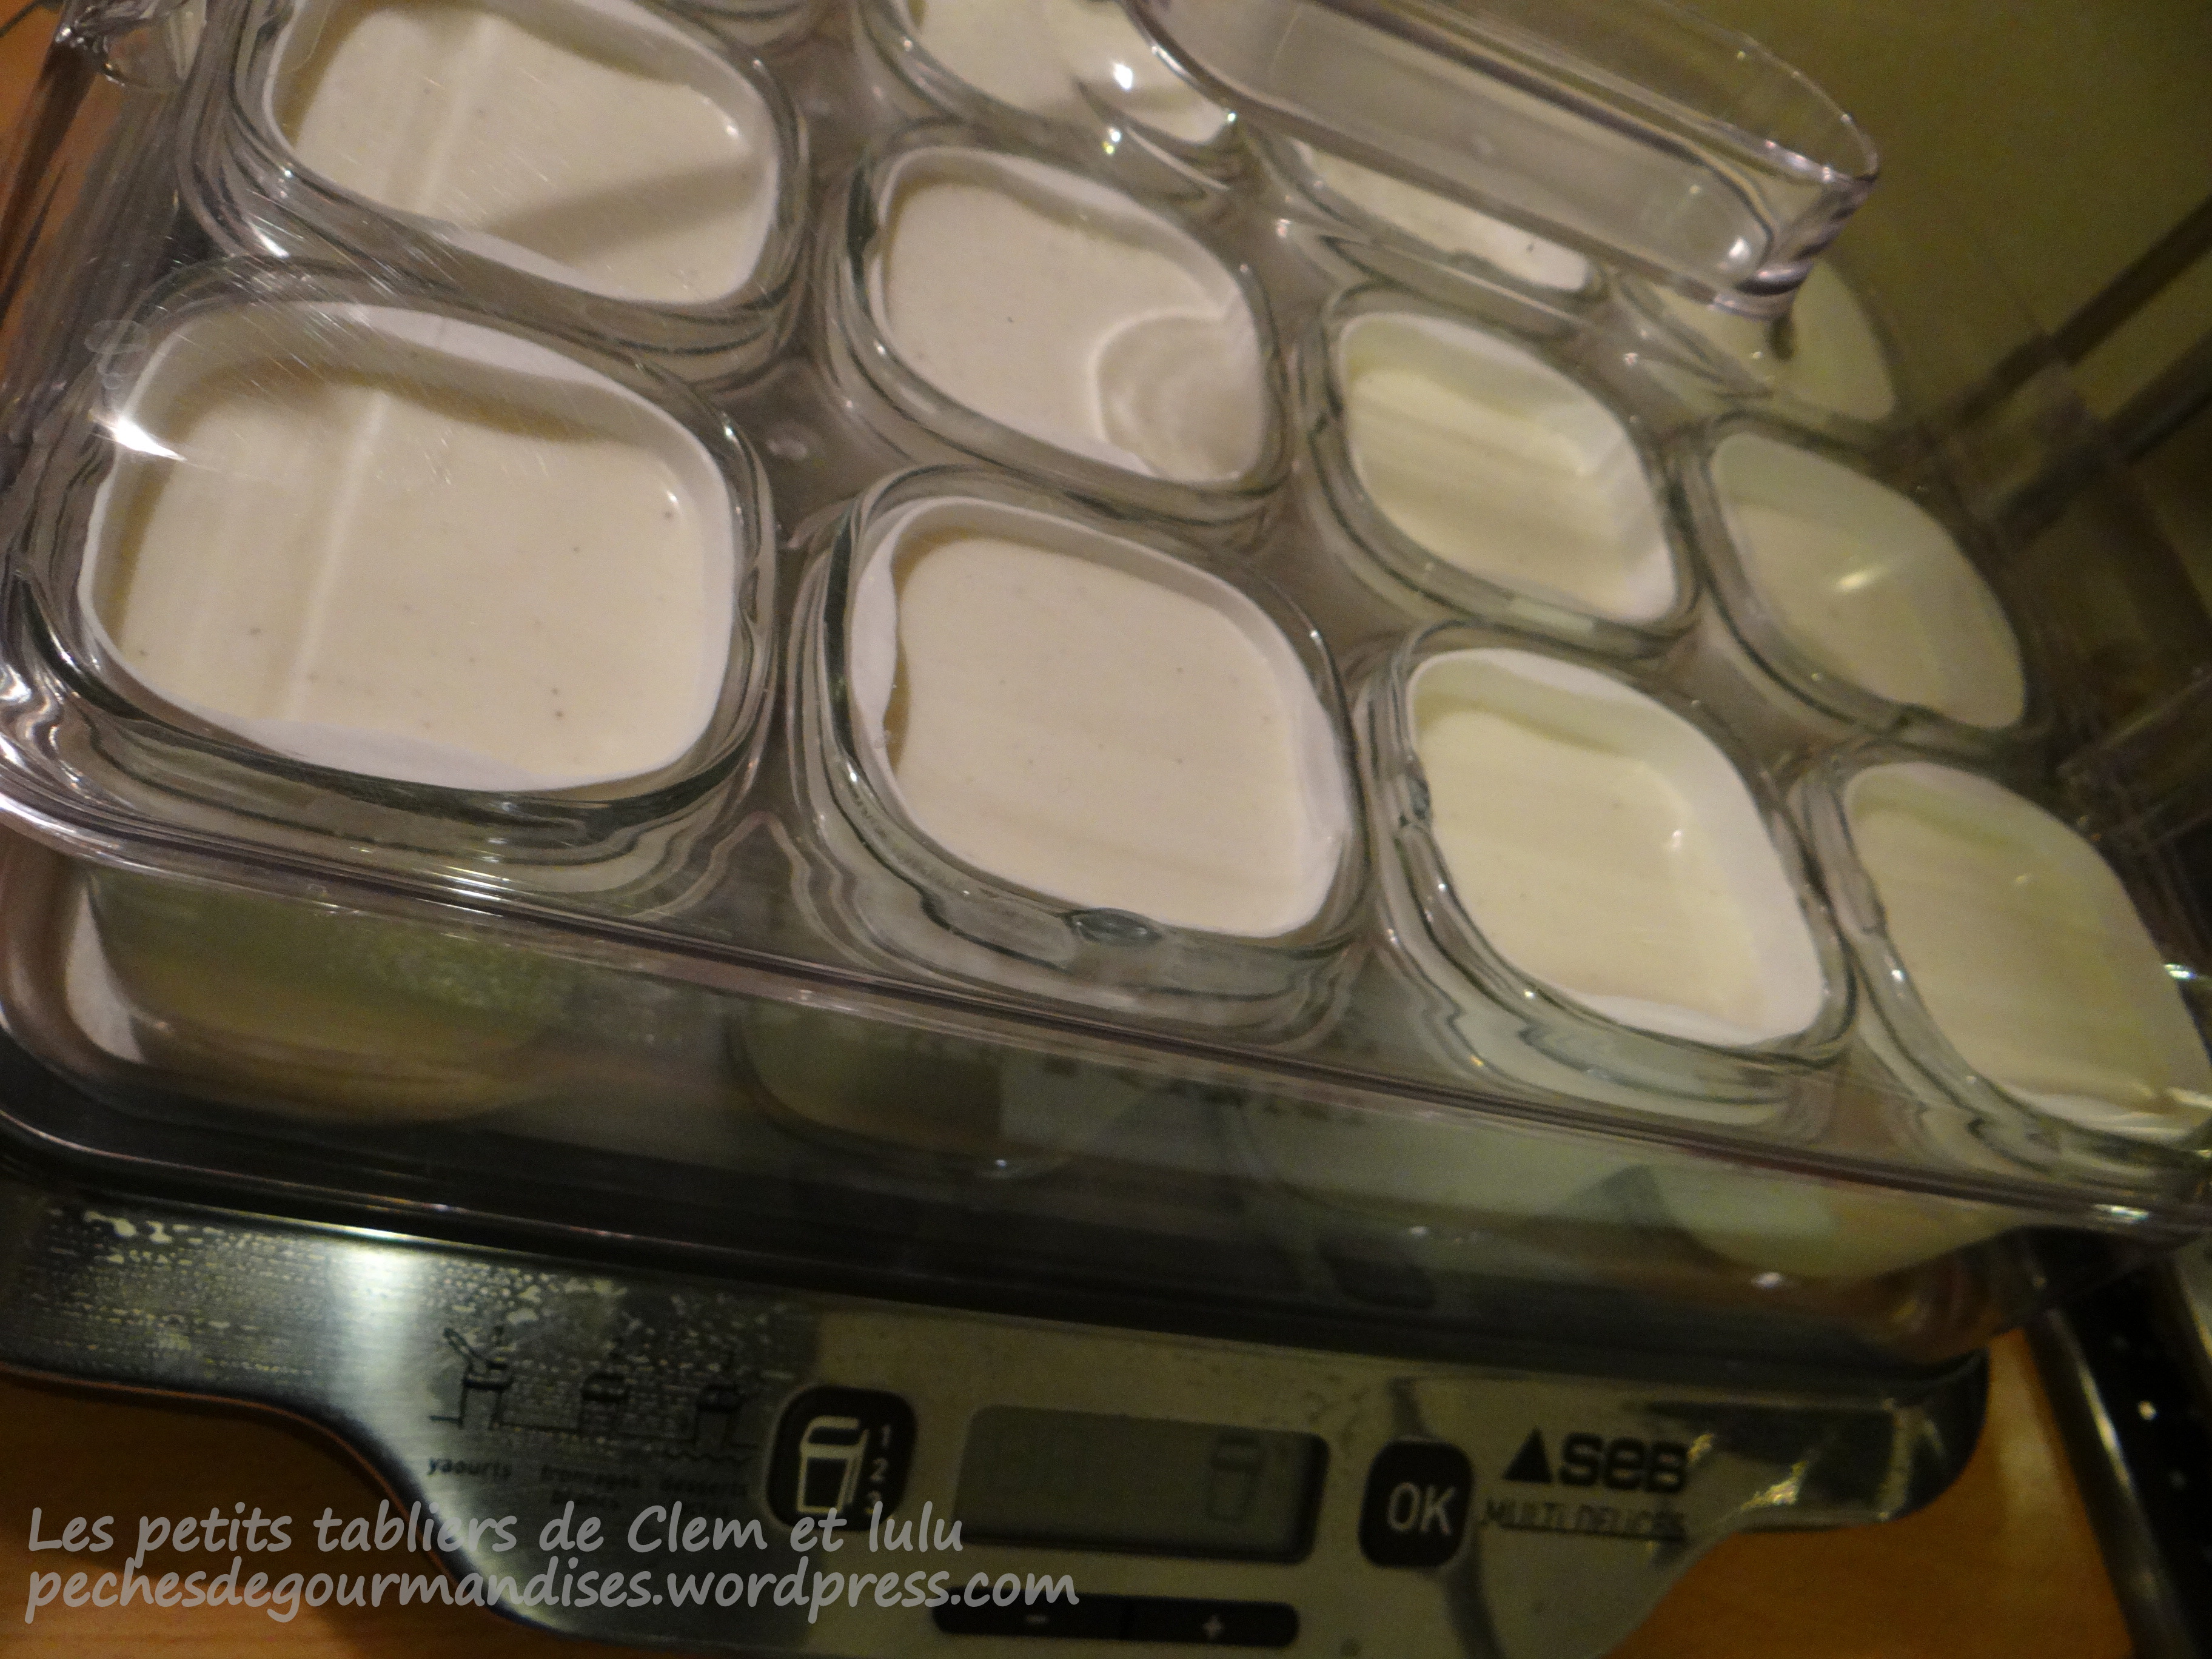 Les ptits délices à la vanille (ou petits-suisses maison)…